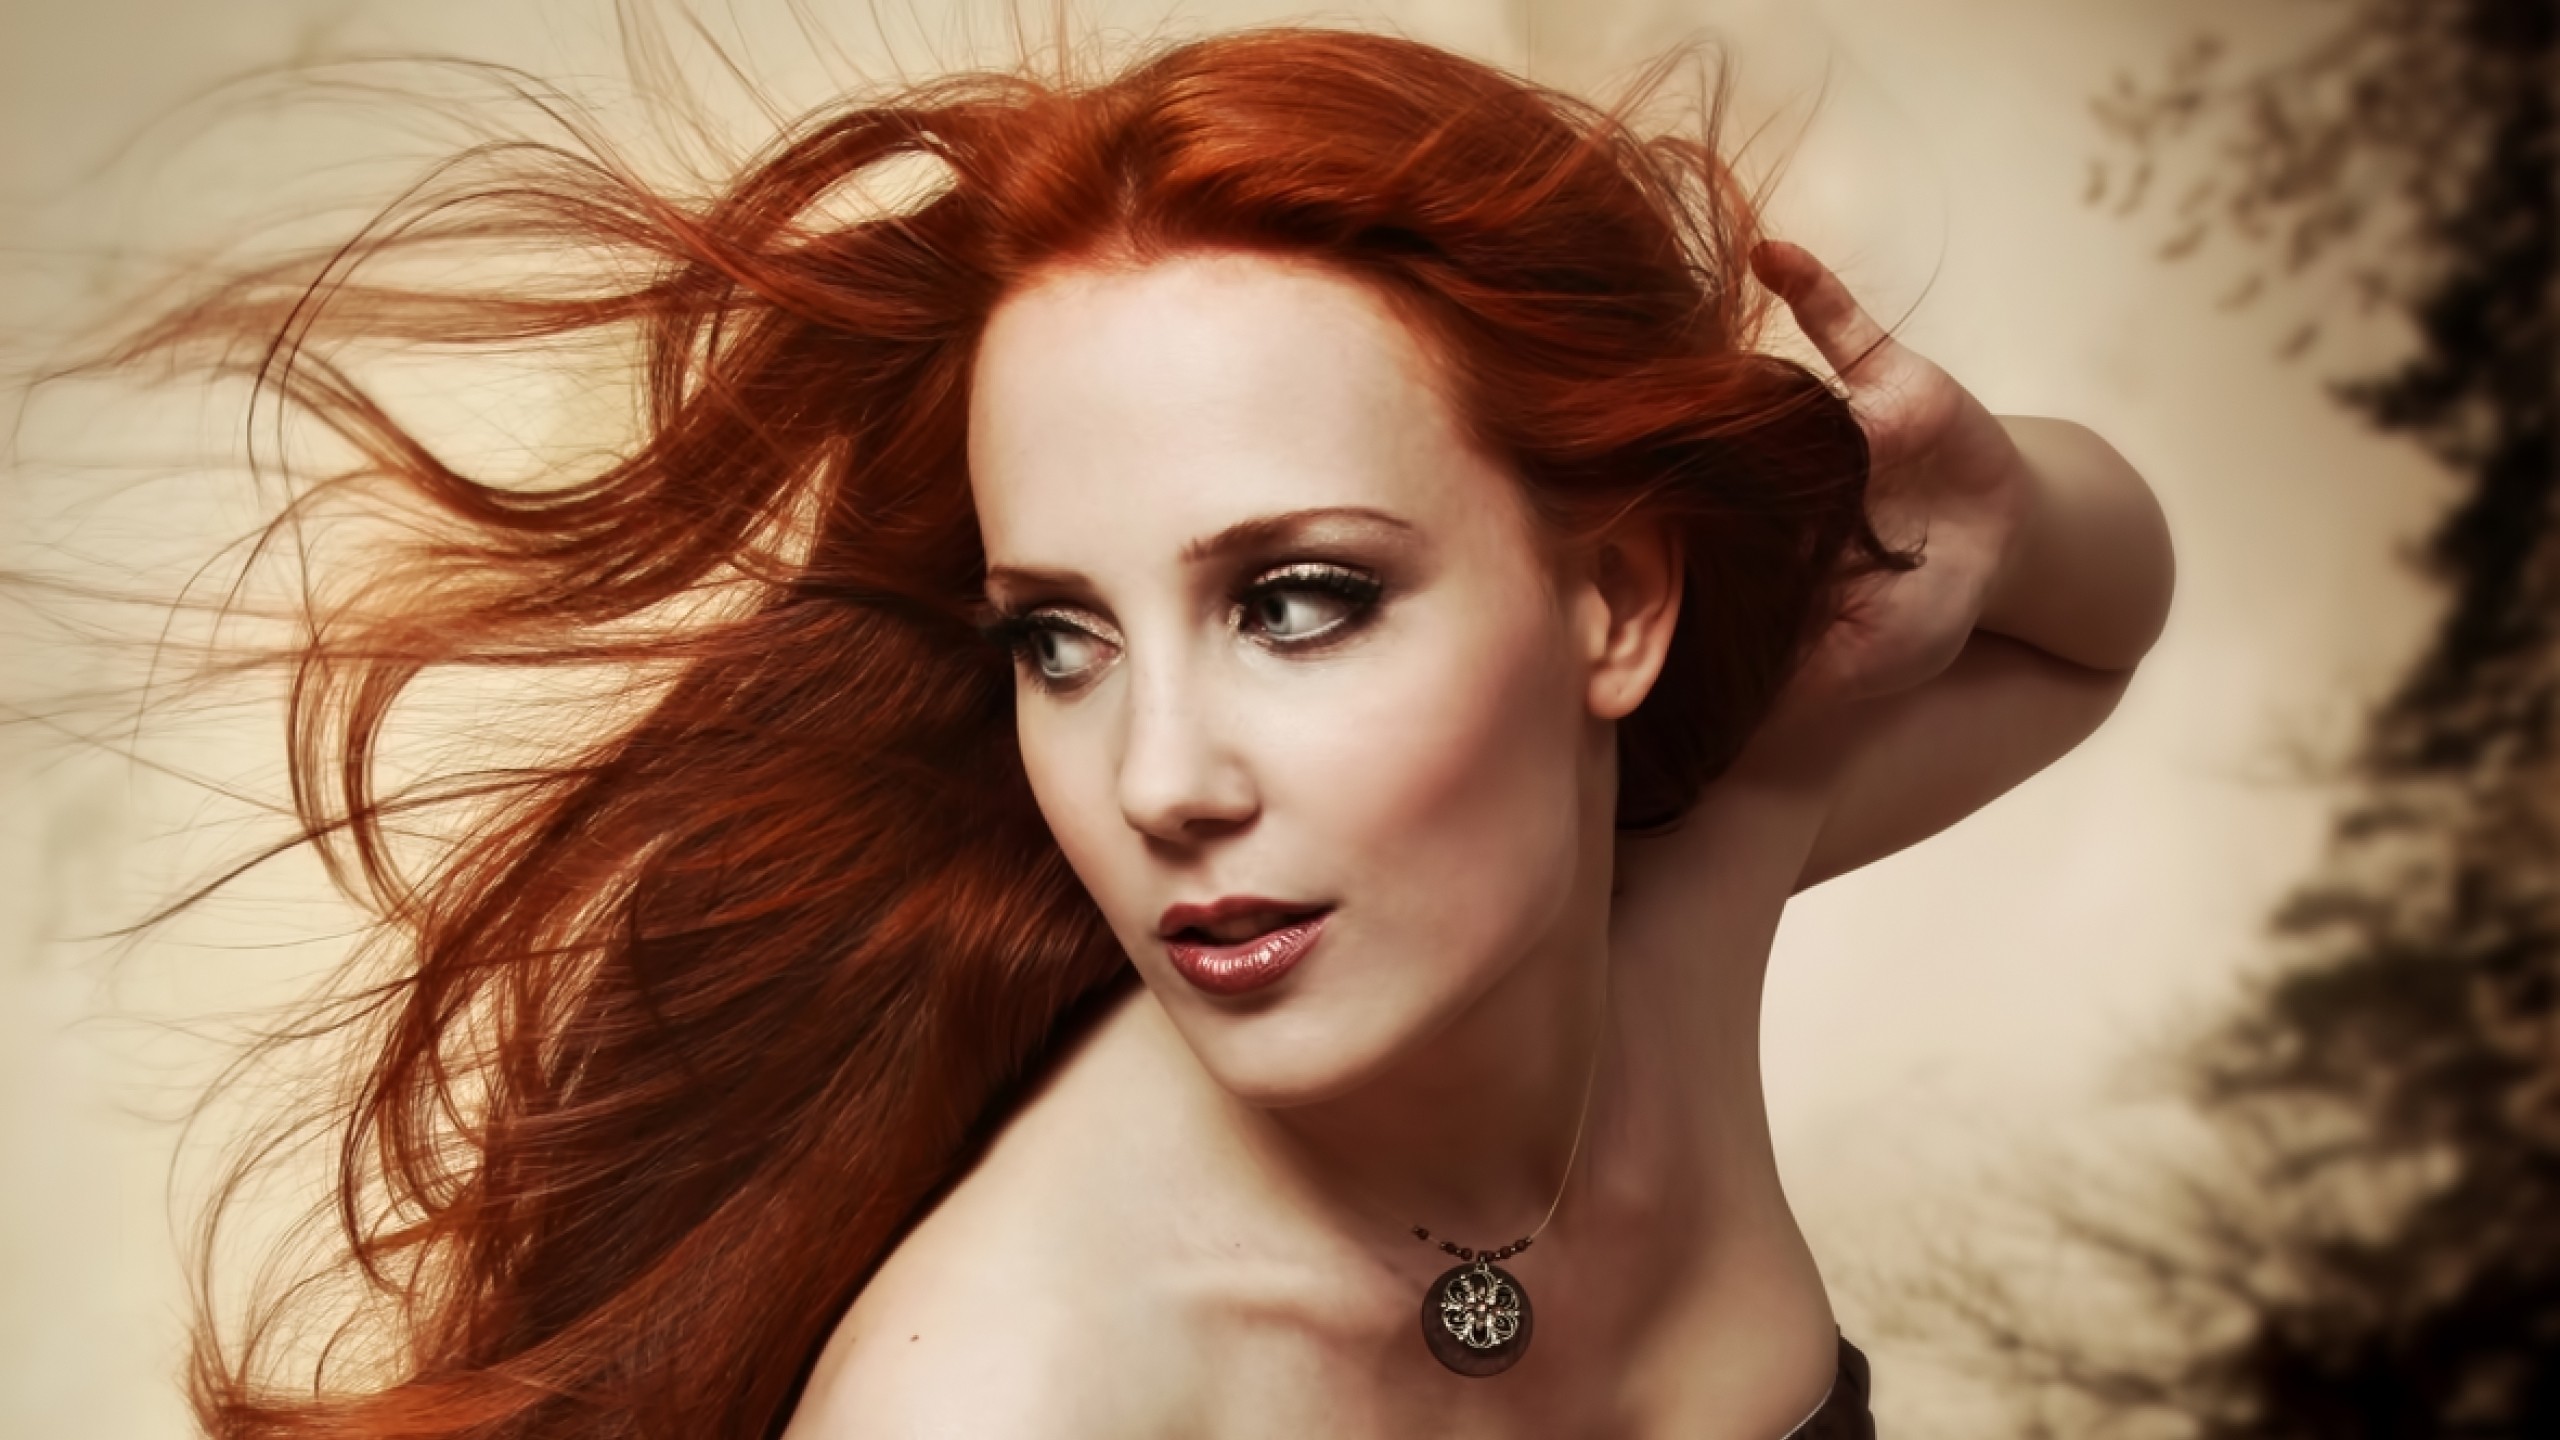 Women Redhead Face Portrait Epica Epica Simone Simons 2560x1440